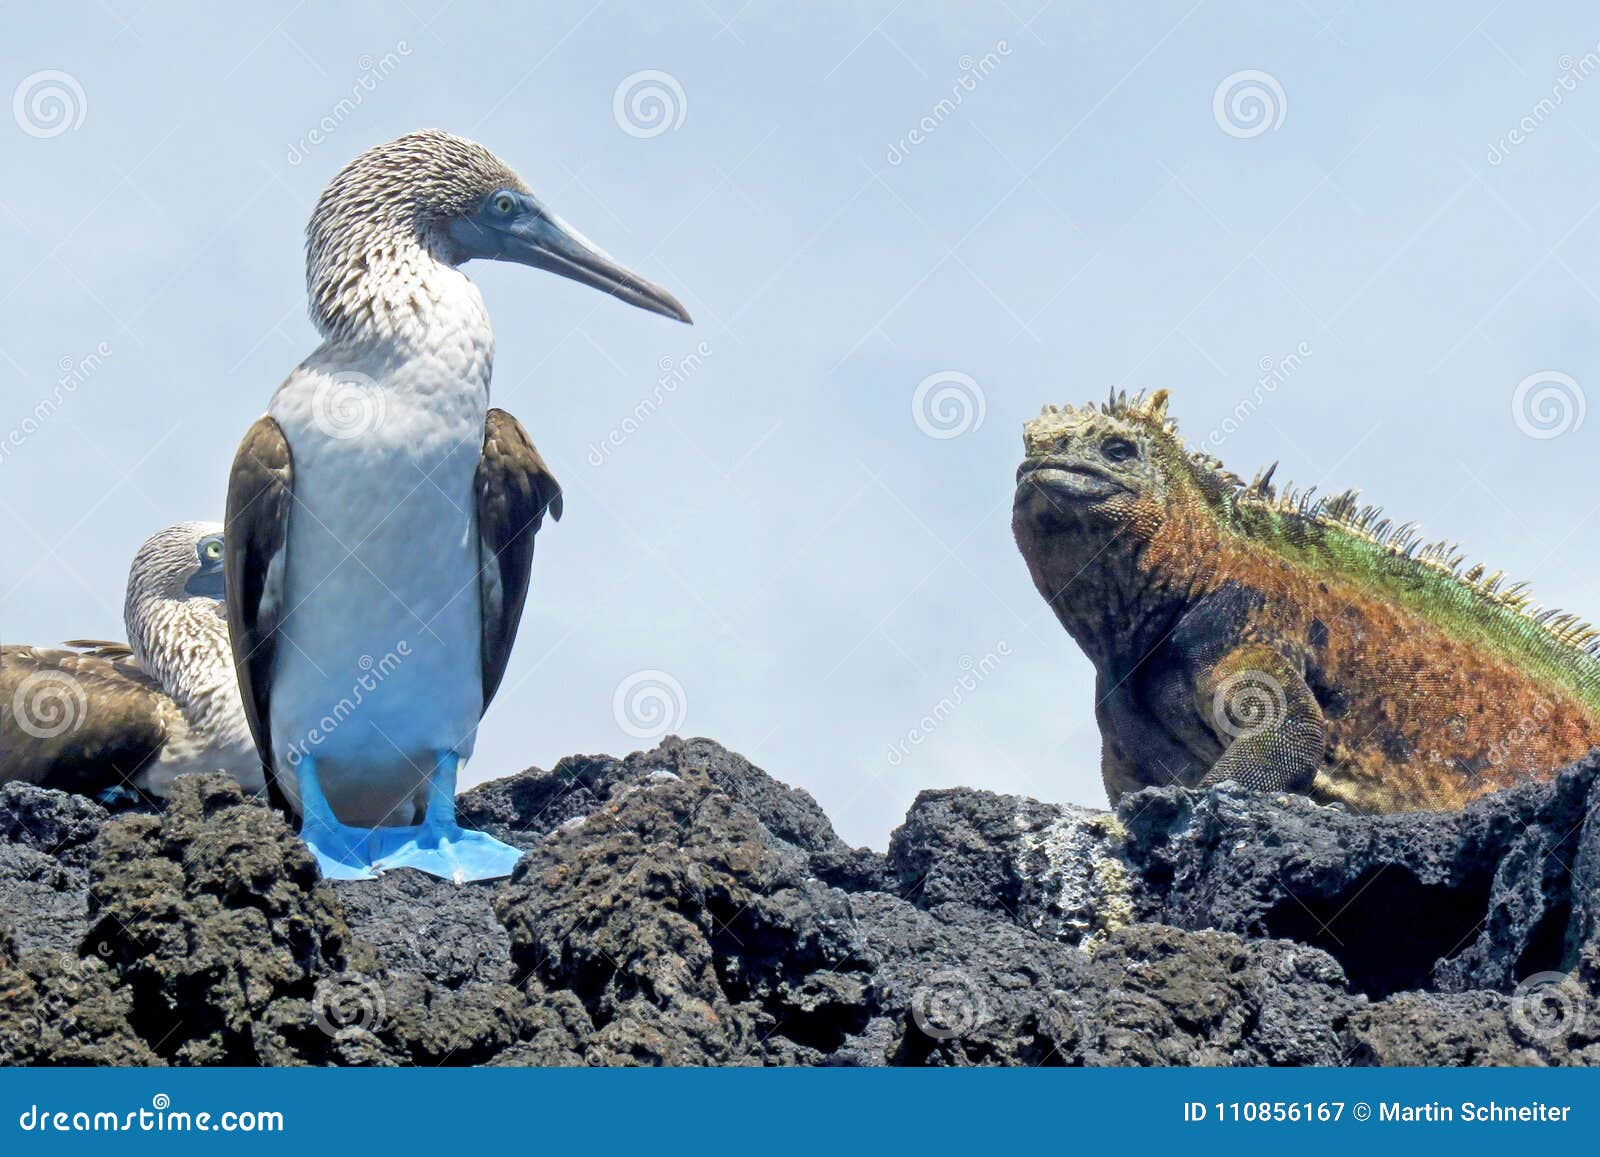 marine iguana with blue footed boobies, booby, sula nebouxii and amblyrhynchus cristatus, on isabela island, galapagos